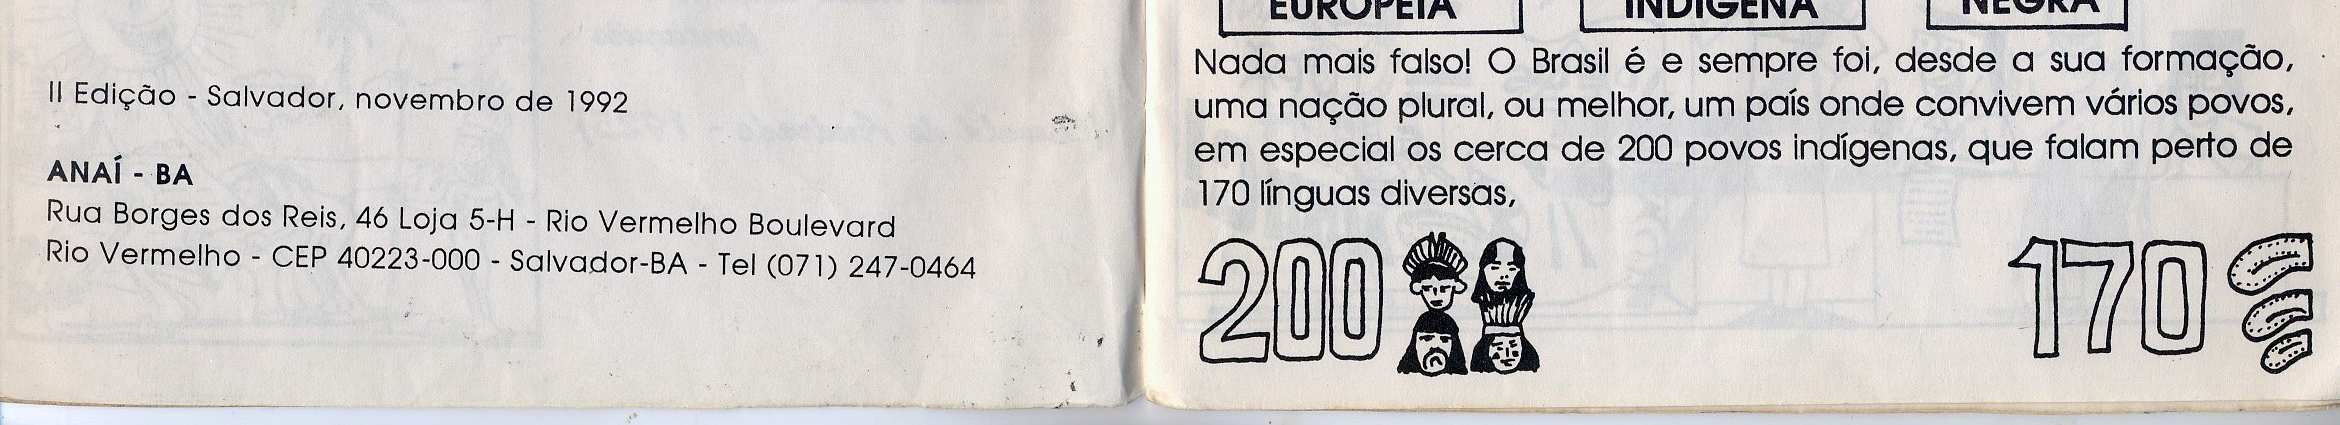 Rio de Janeiro: Editora UFRJ, 1987 GUIMARÃES,